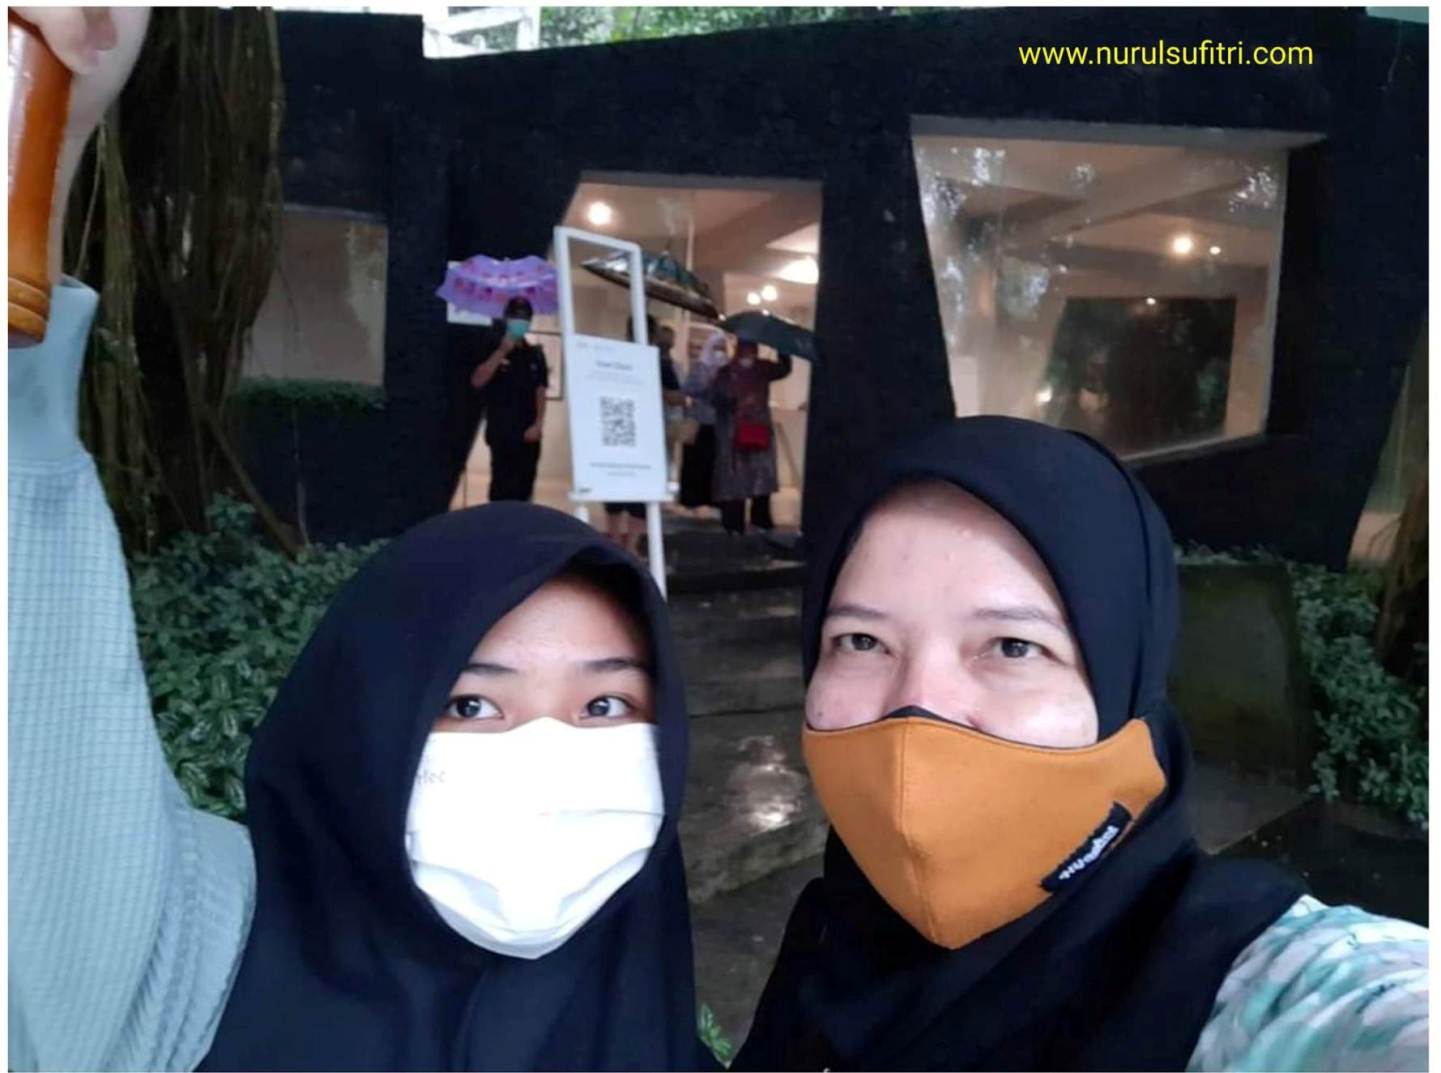 Jelajah Museum Ullen Sentalu yang Mengagumkan Wisata Yogyakarta Nurul Sufitri Travel Blog